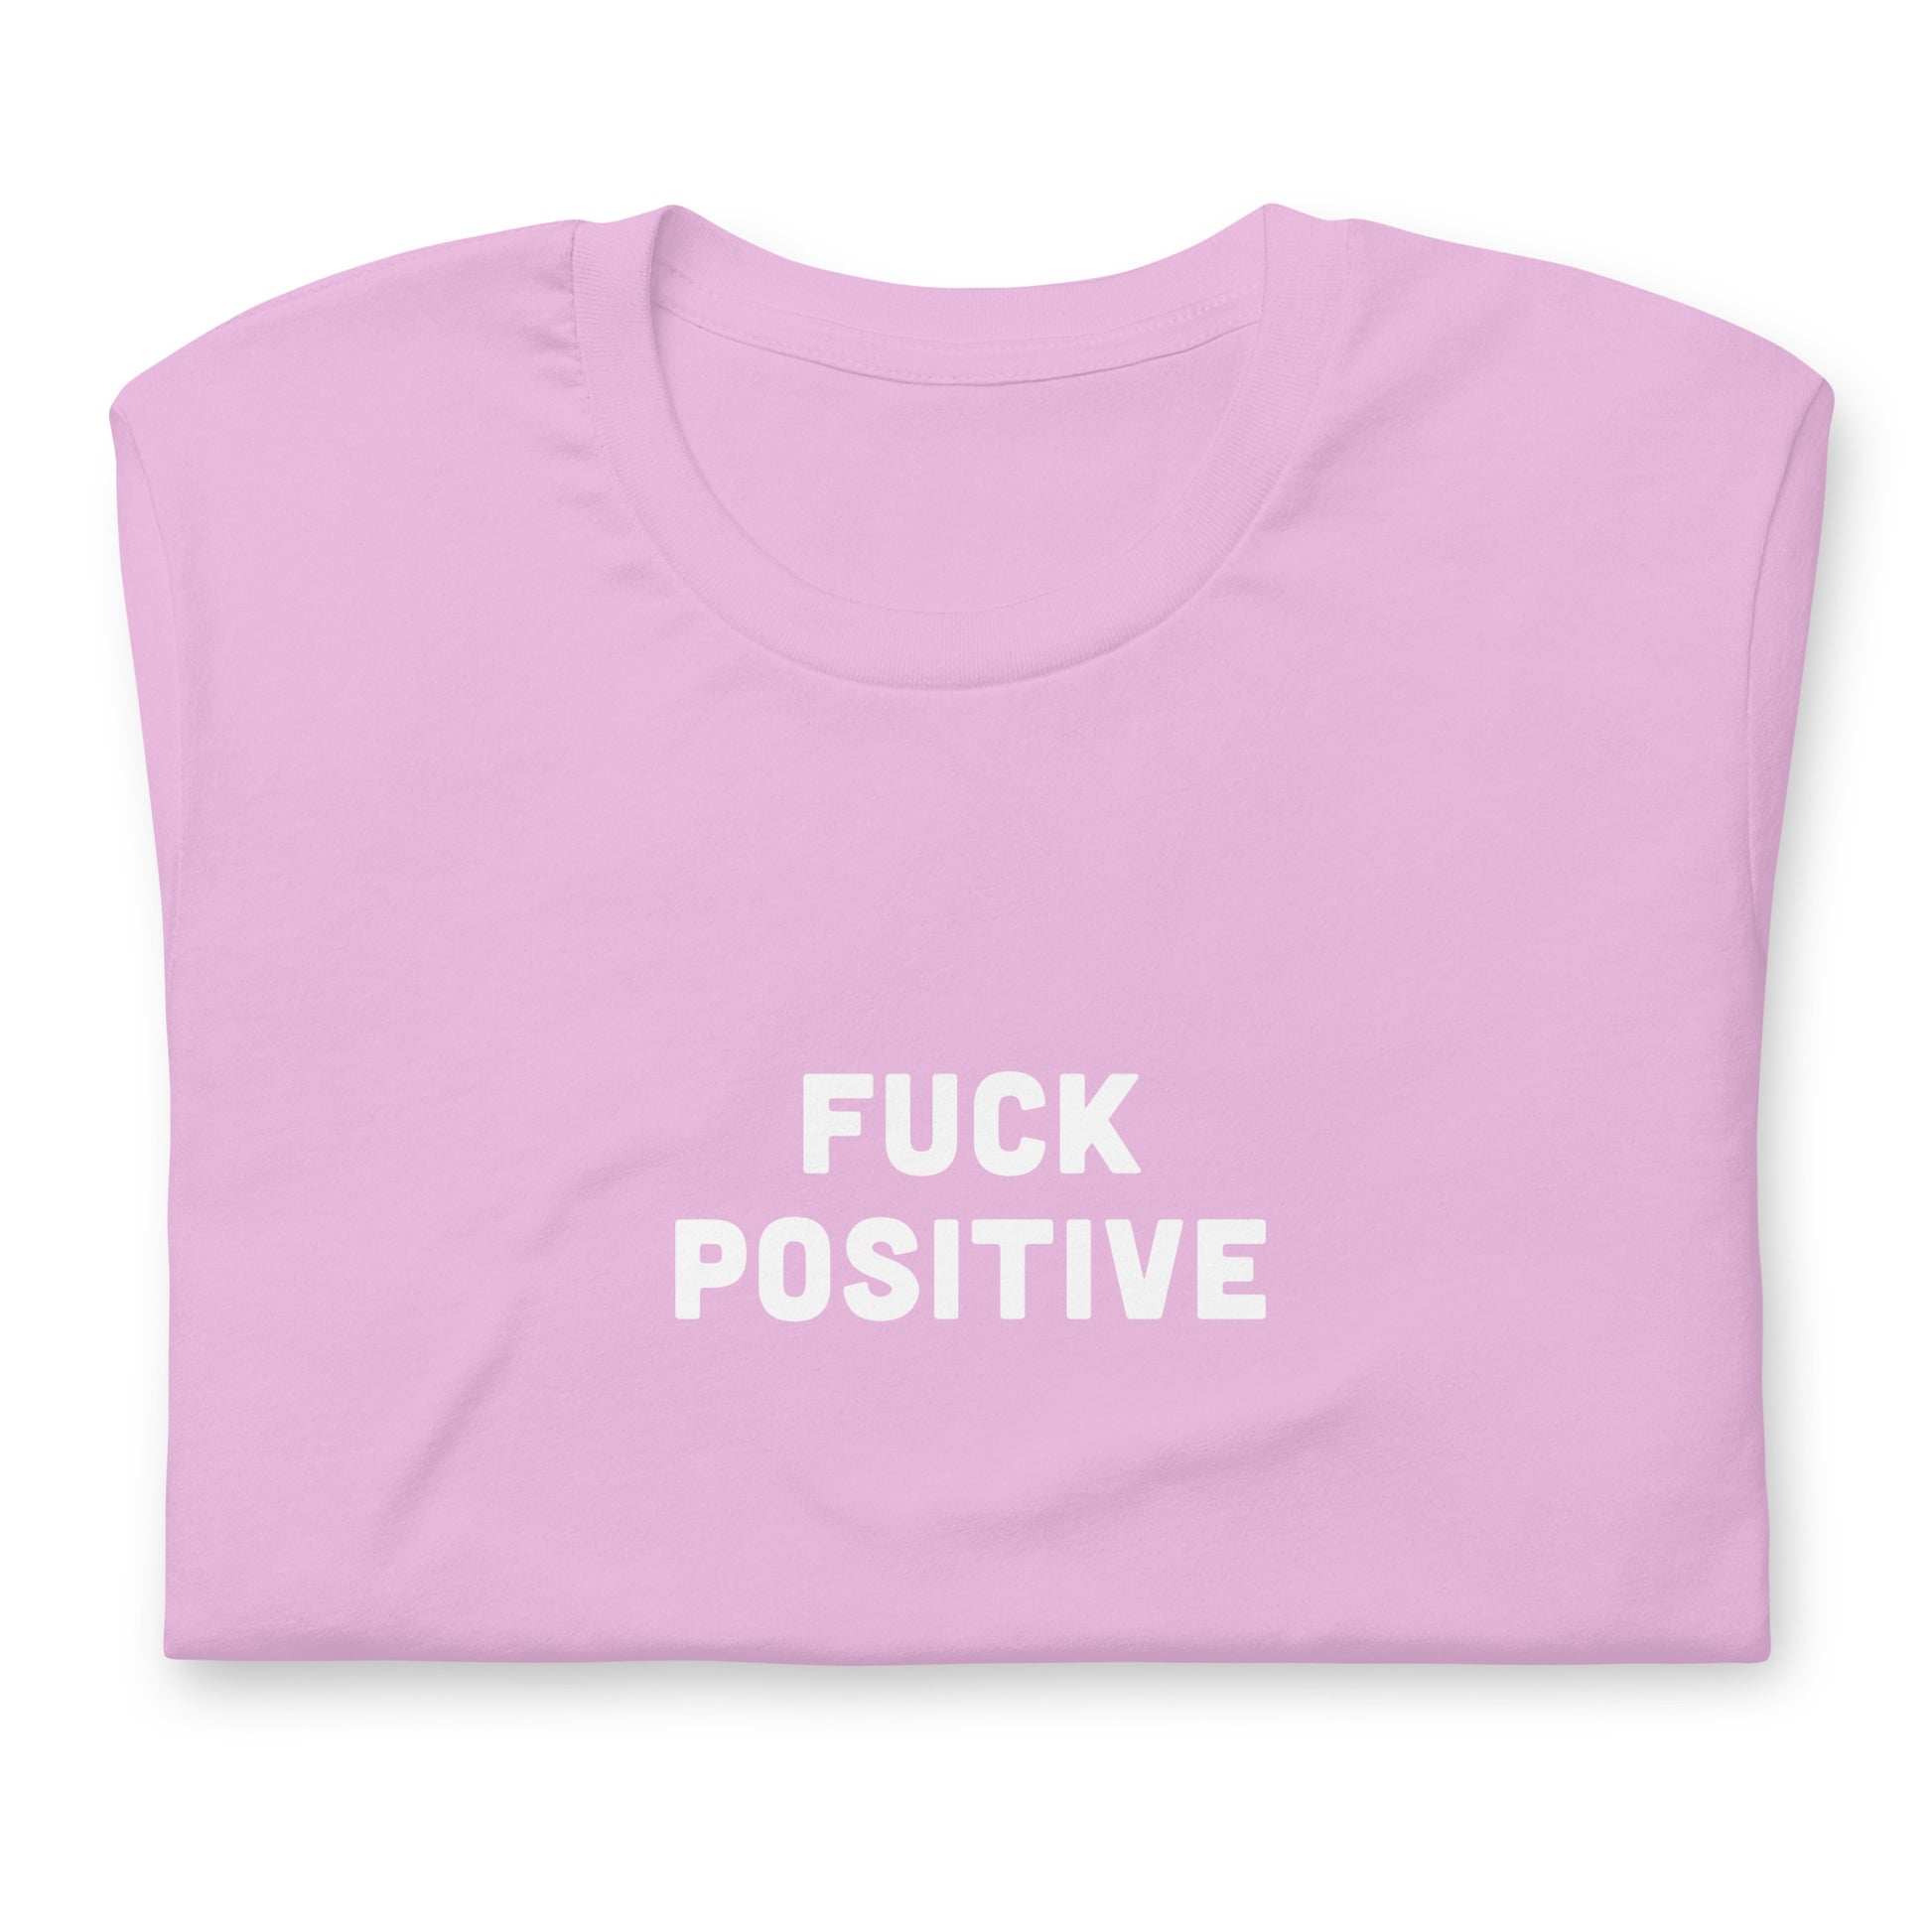 Fuck Positive T-Shirt Size 2XL Color Forest